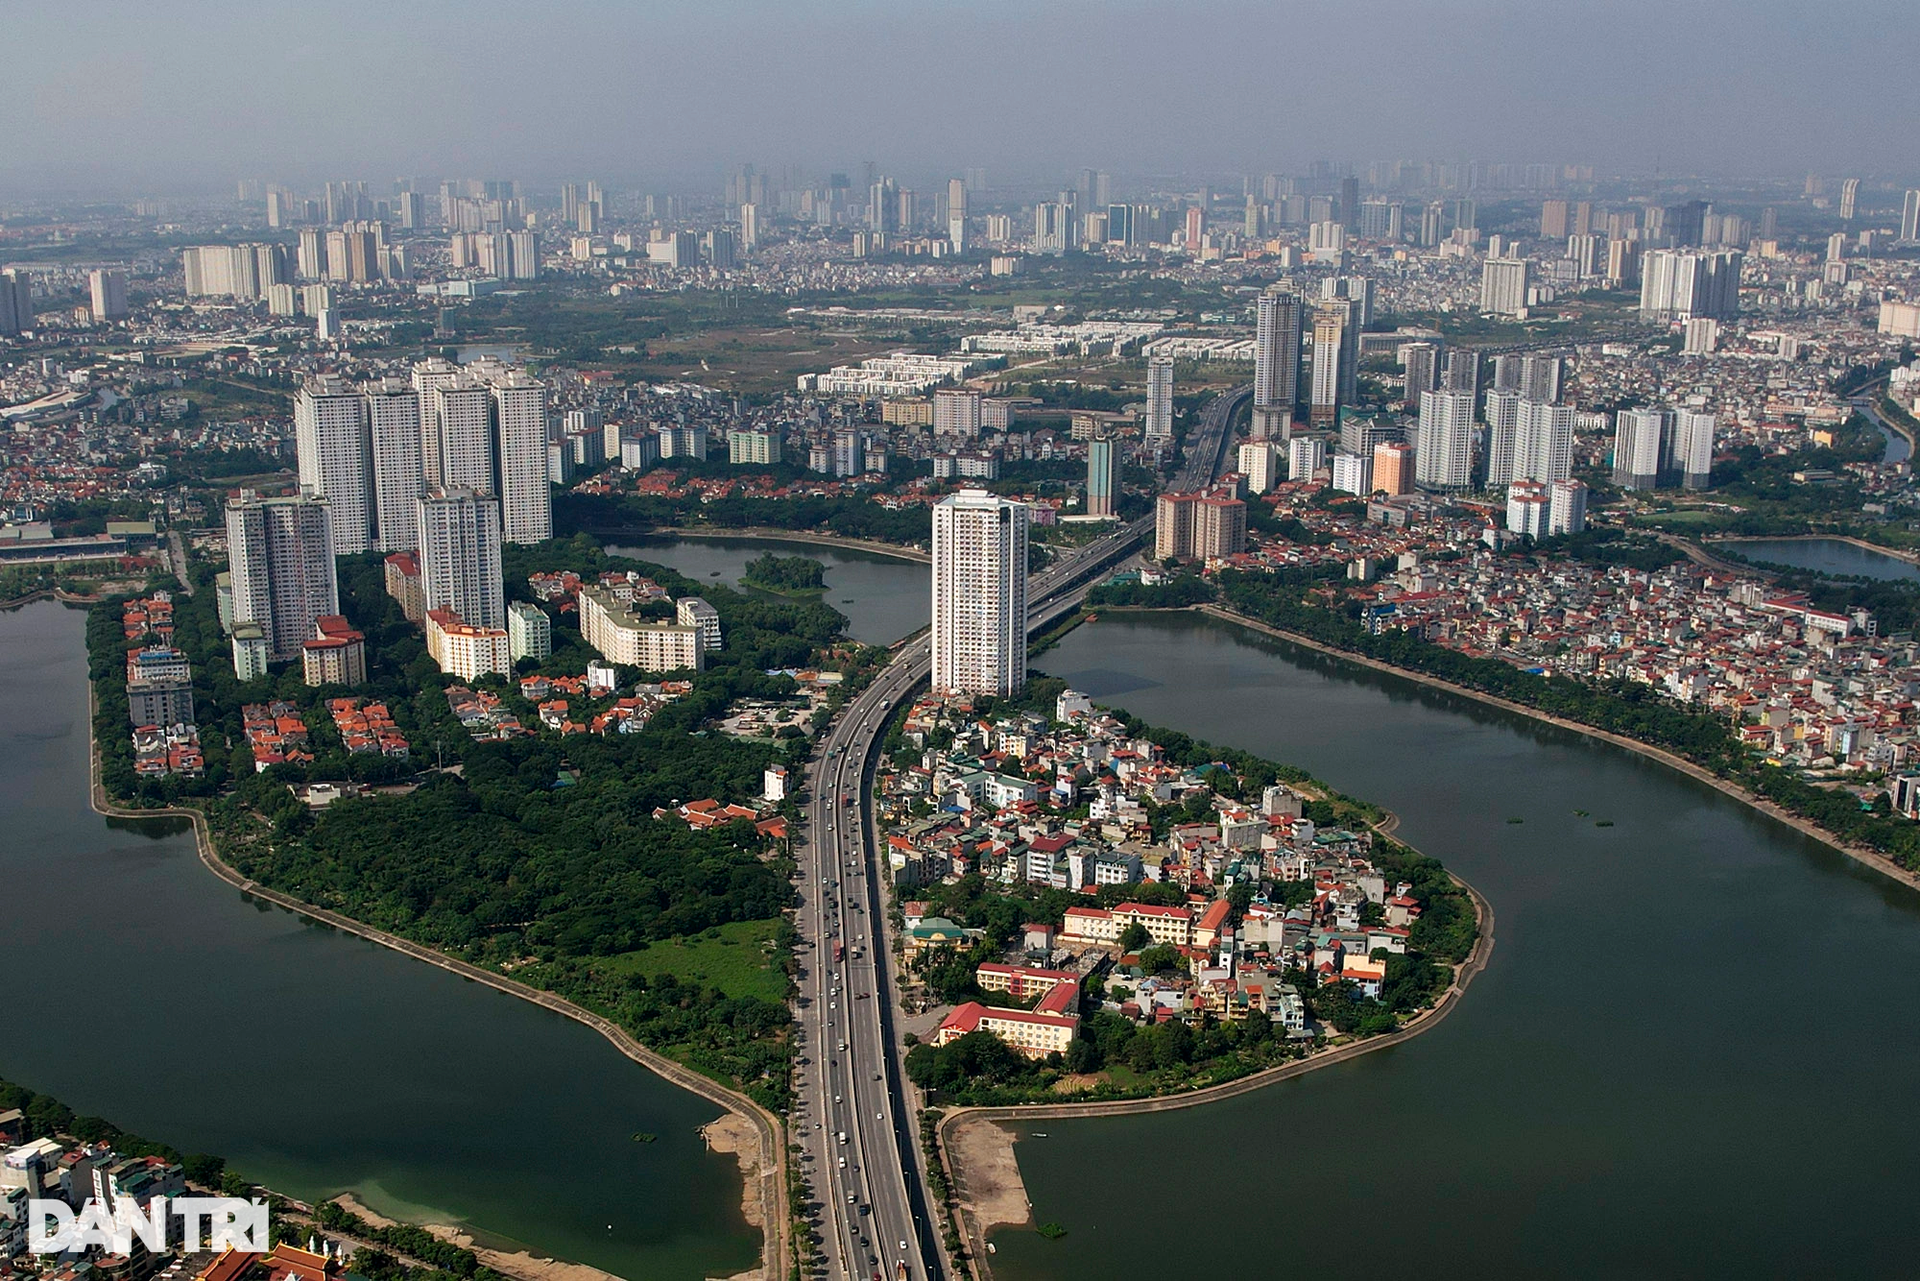 85 tòa chung cư trên phường Hoàng Liệt, bốc thăm suất học là còn nhẹ - 11